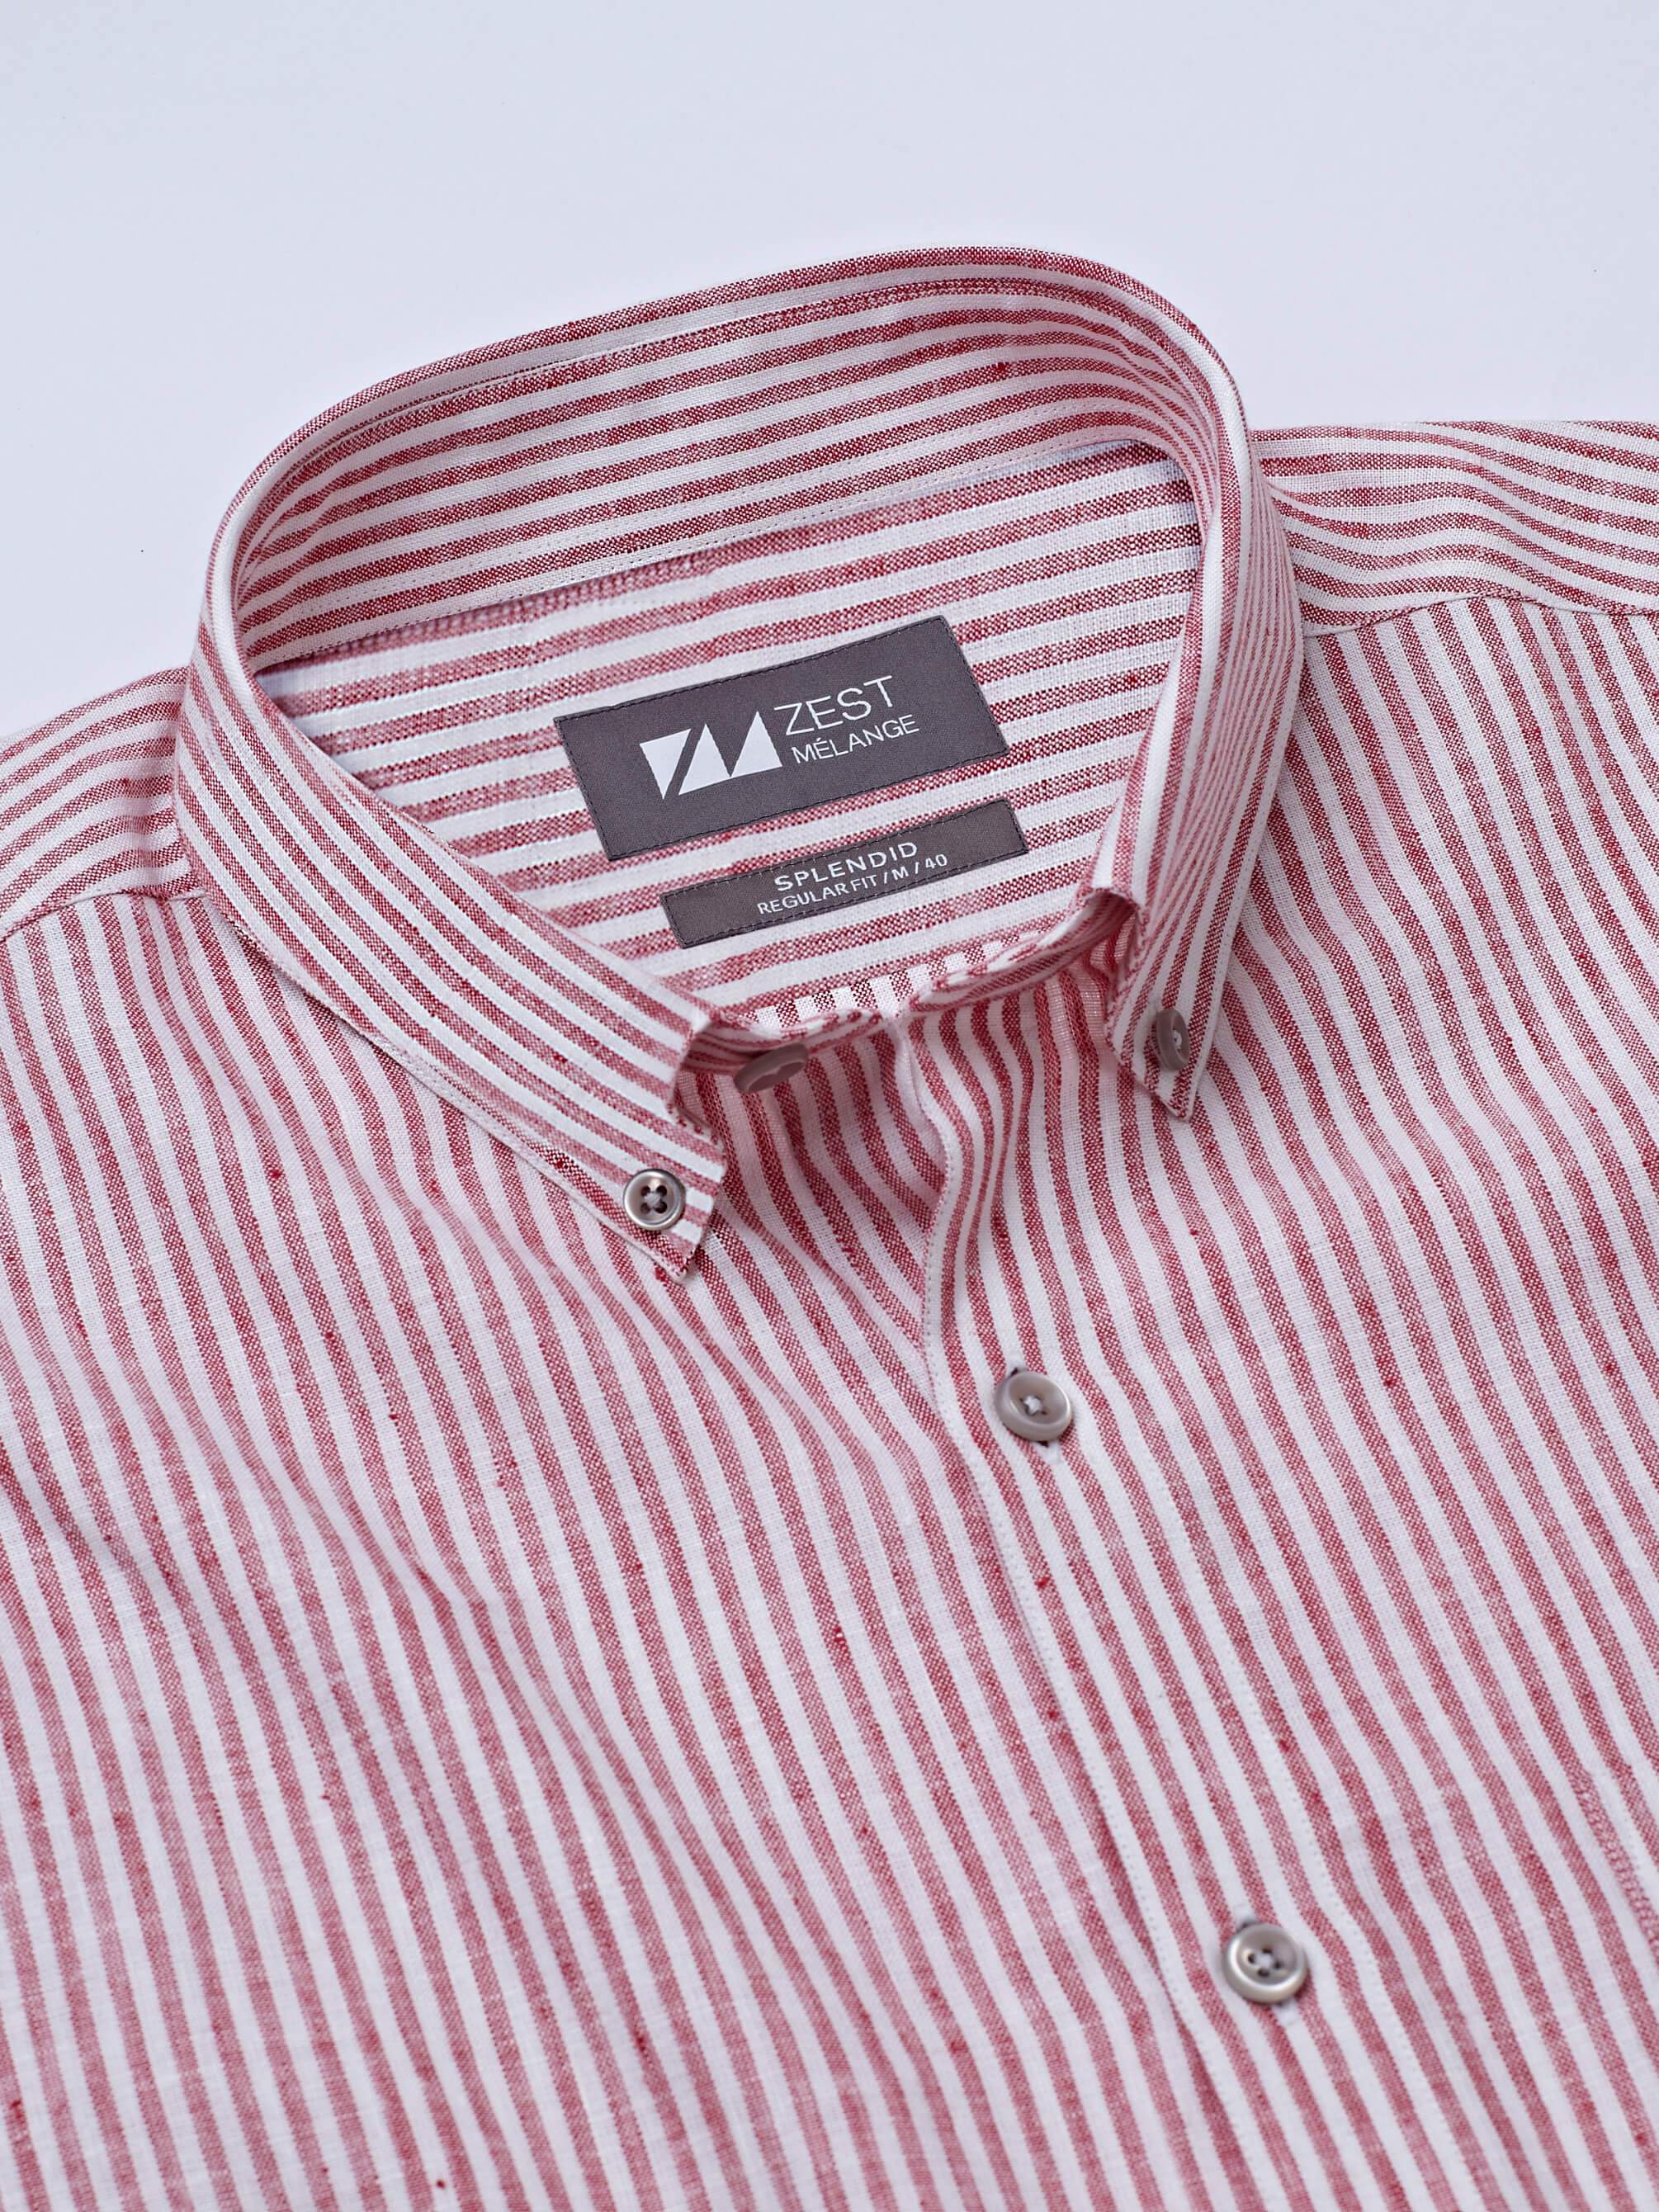 Classic Button-Down Stripe Shirt (Red) - Zest Mélange 